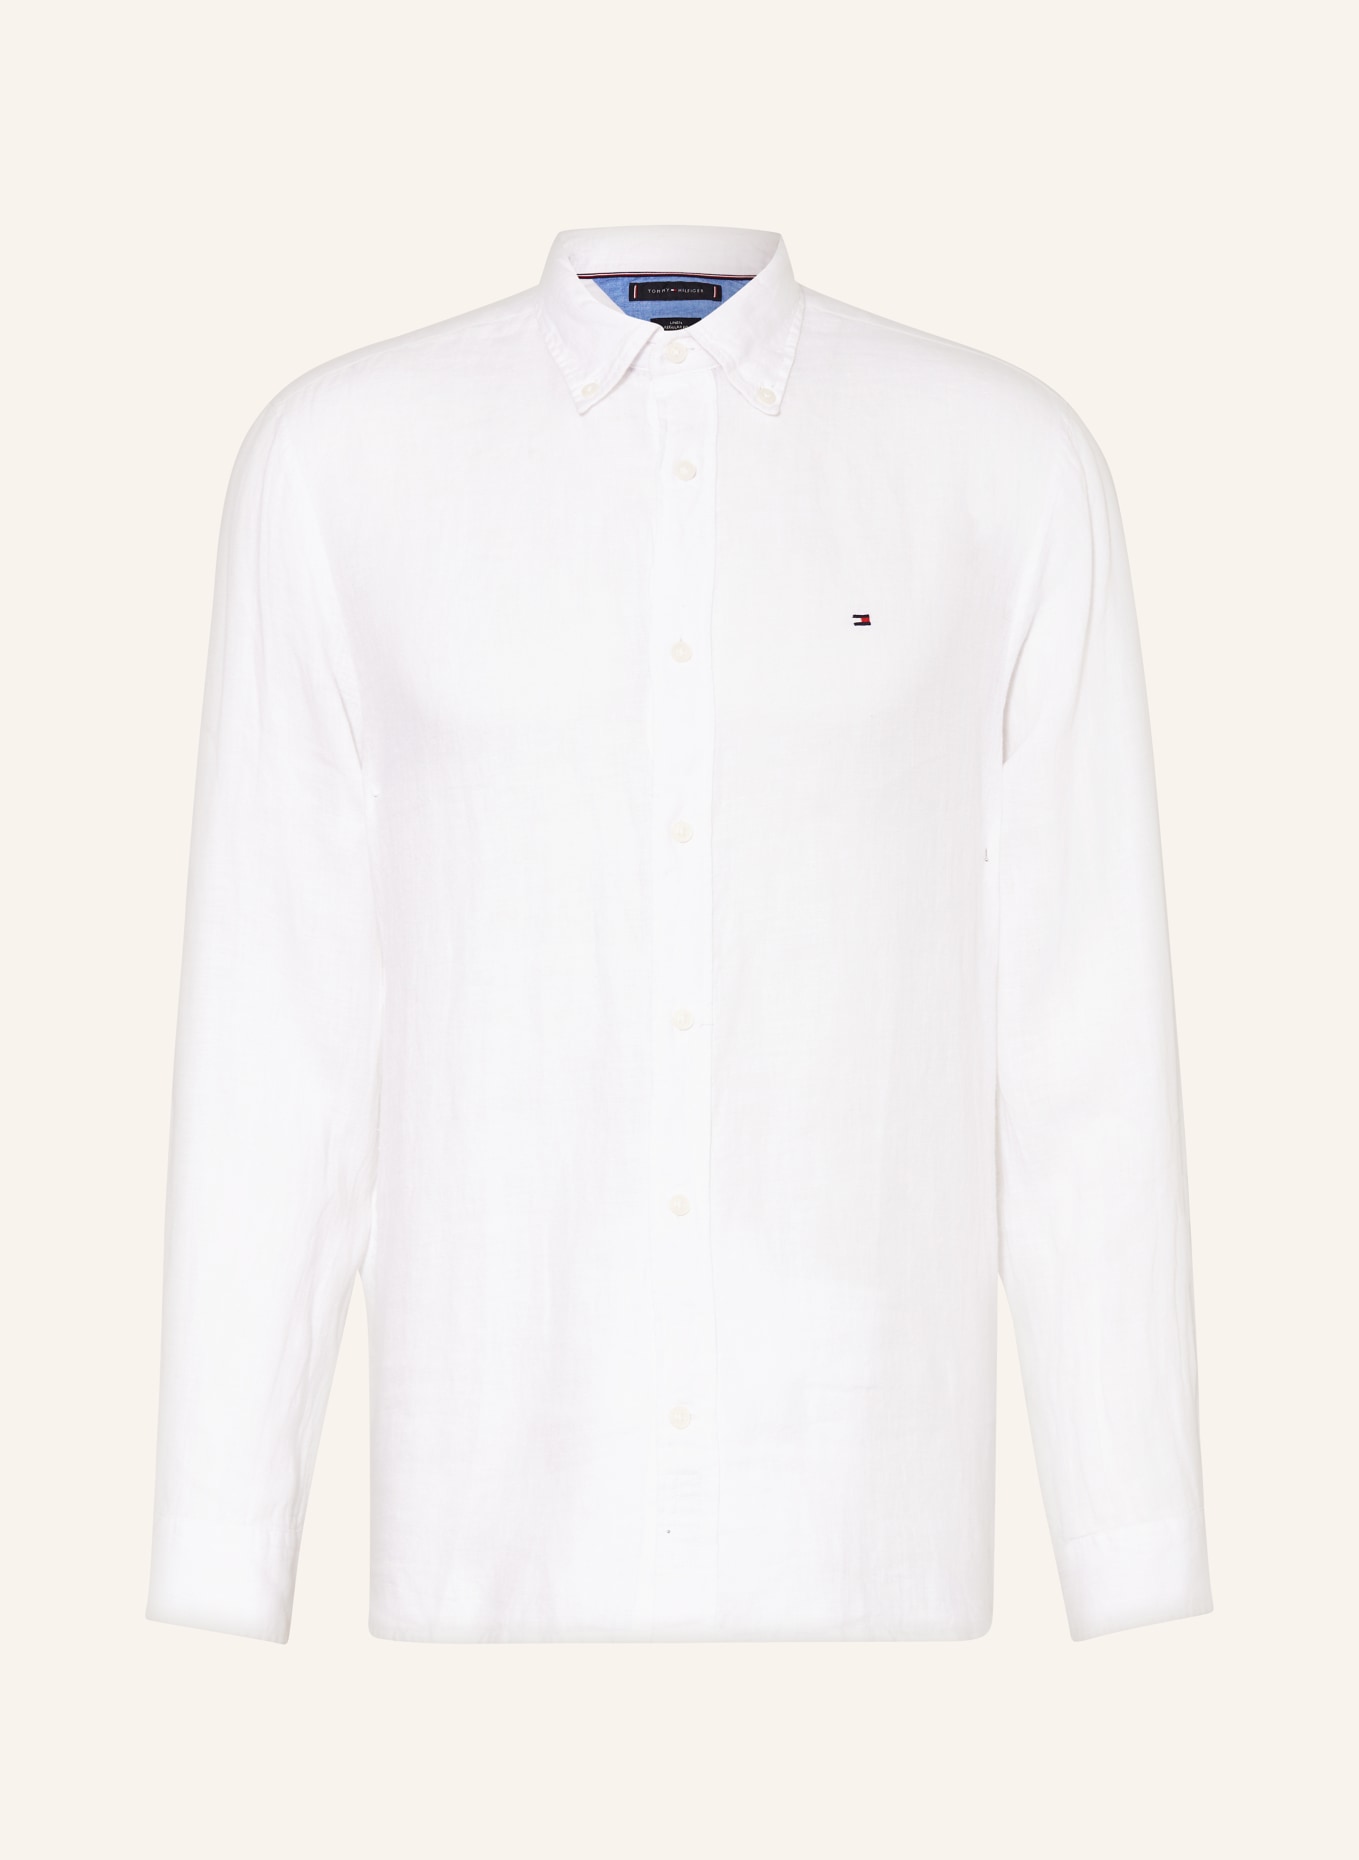 TOMMY HILFIGER Linen shirt regular fit, Color: WHITE (Image 1)